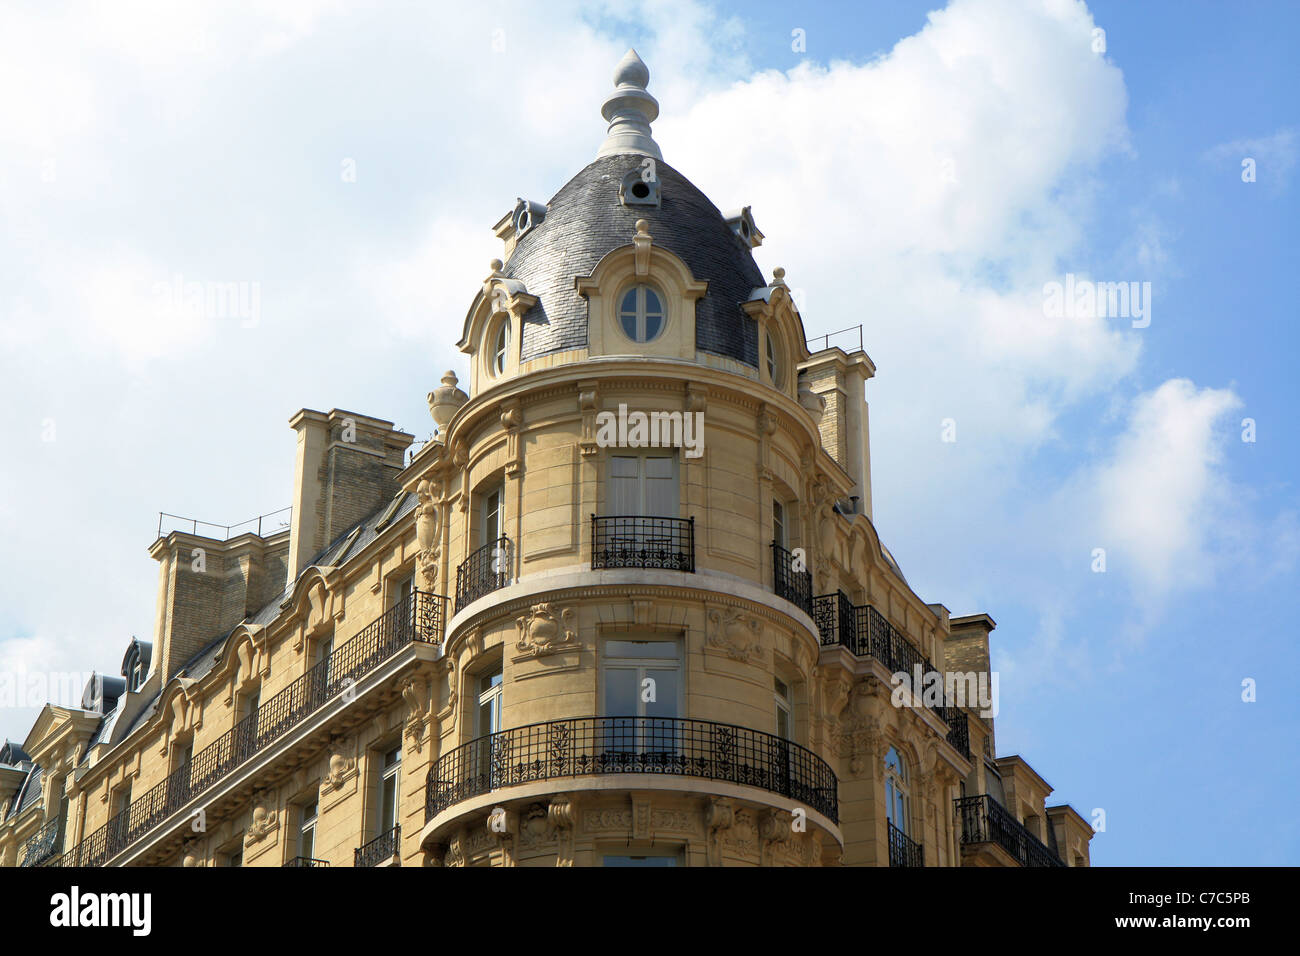 Vue rapprochée de l'immeuble haussmannien avec rotonde à Paris, France Banque D'Images